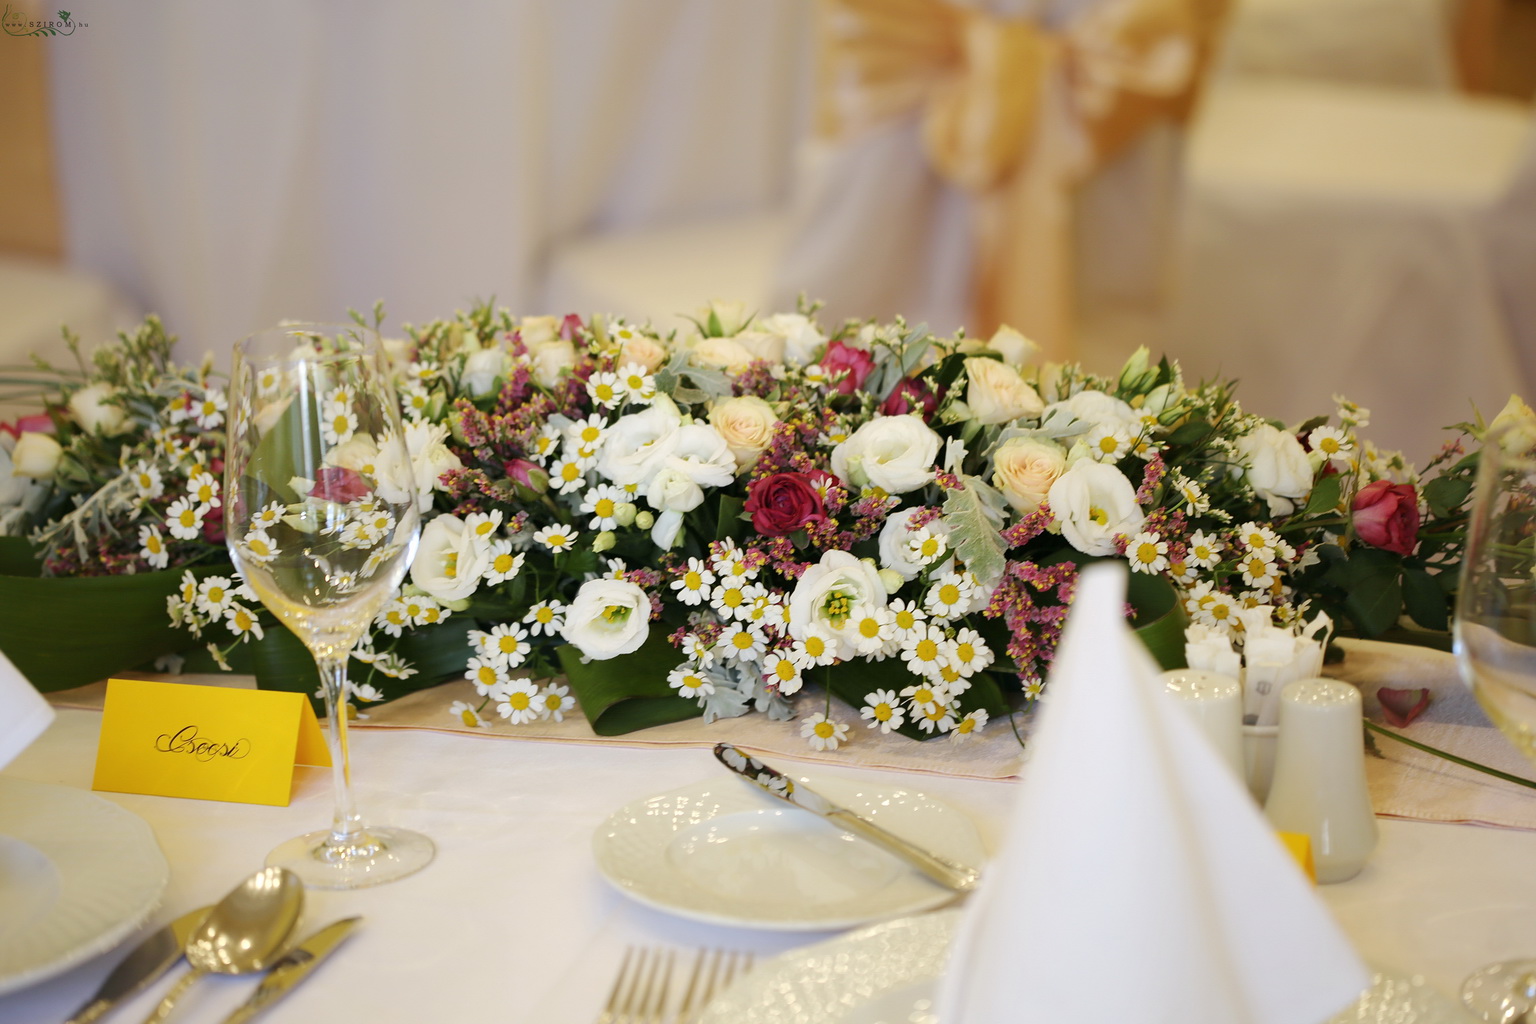 Virágküldés Budapest - Hosszúkás asztaldísz (liziantusz, bokros rózsa, kamilla, fehér, lila) Ádám Villa